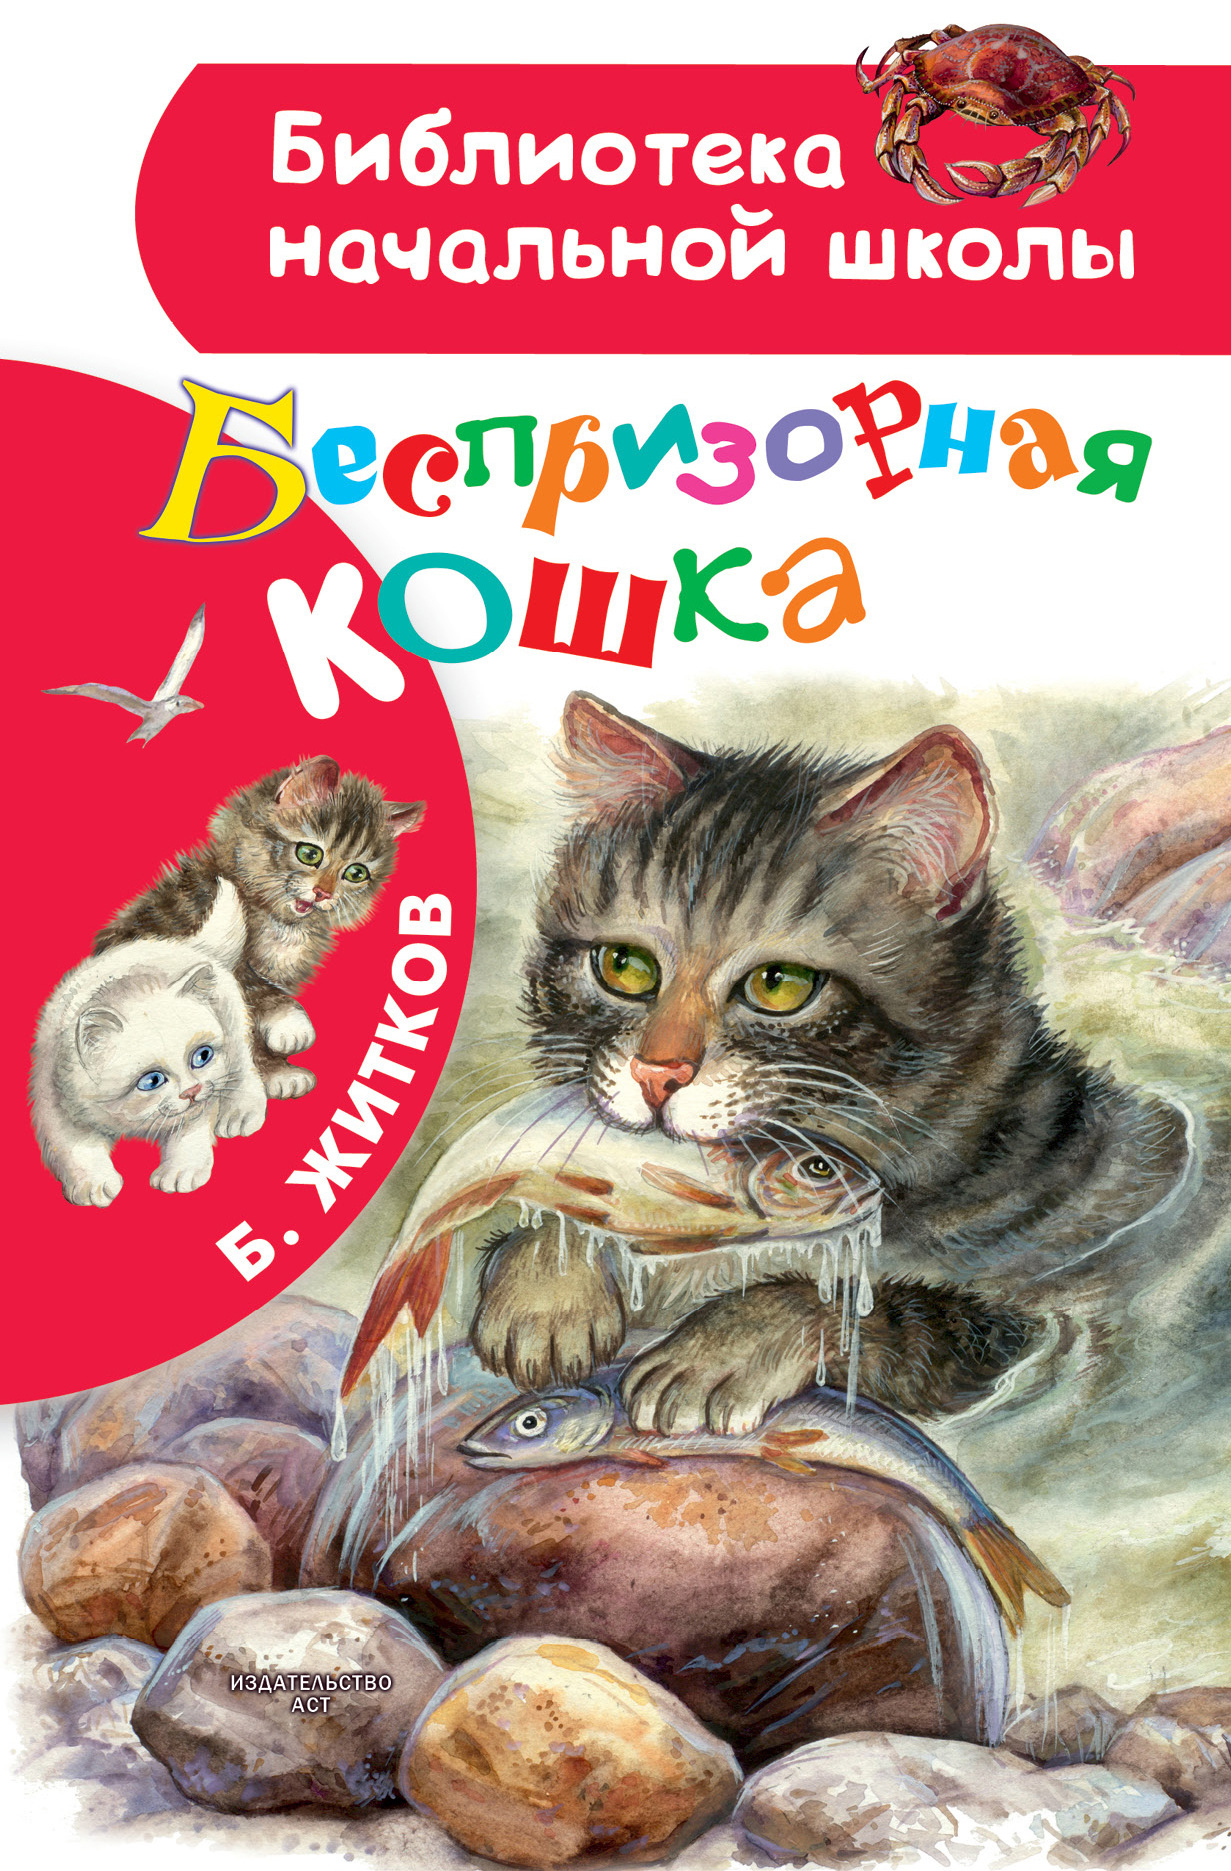 Книга Беспризорная кошка из серии , созданная Борис Житков, может относится к жанру Детская проза, Русская классика. Стоимость электронной книги Беспризорная кошка с идентификатором 42549871 составляет 129.00 руб.